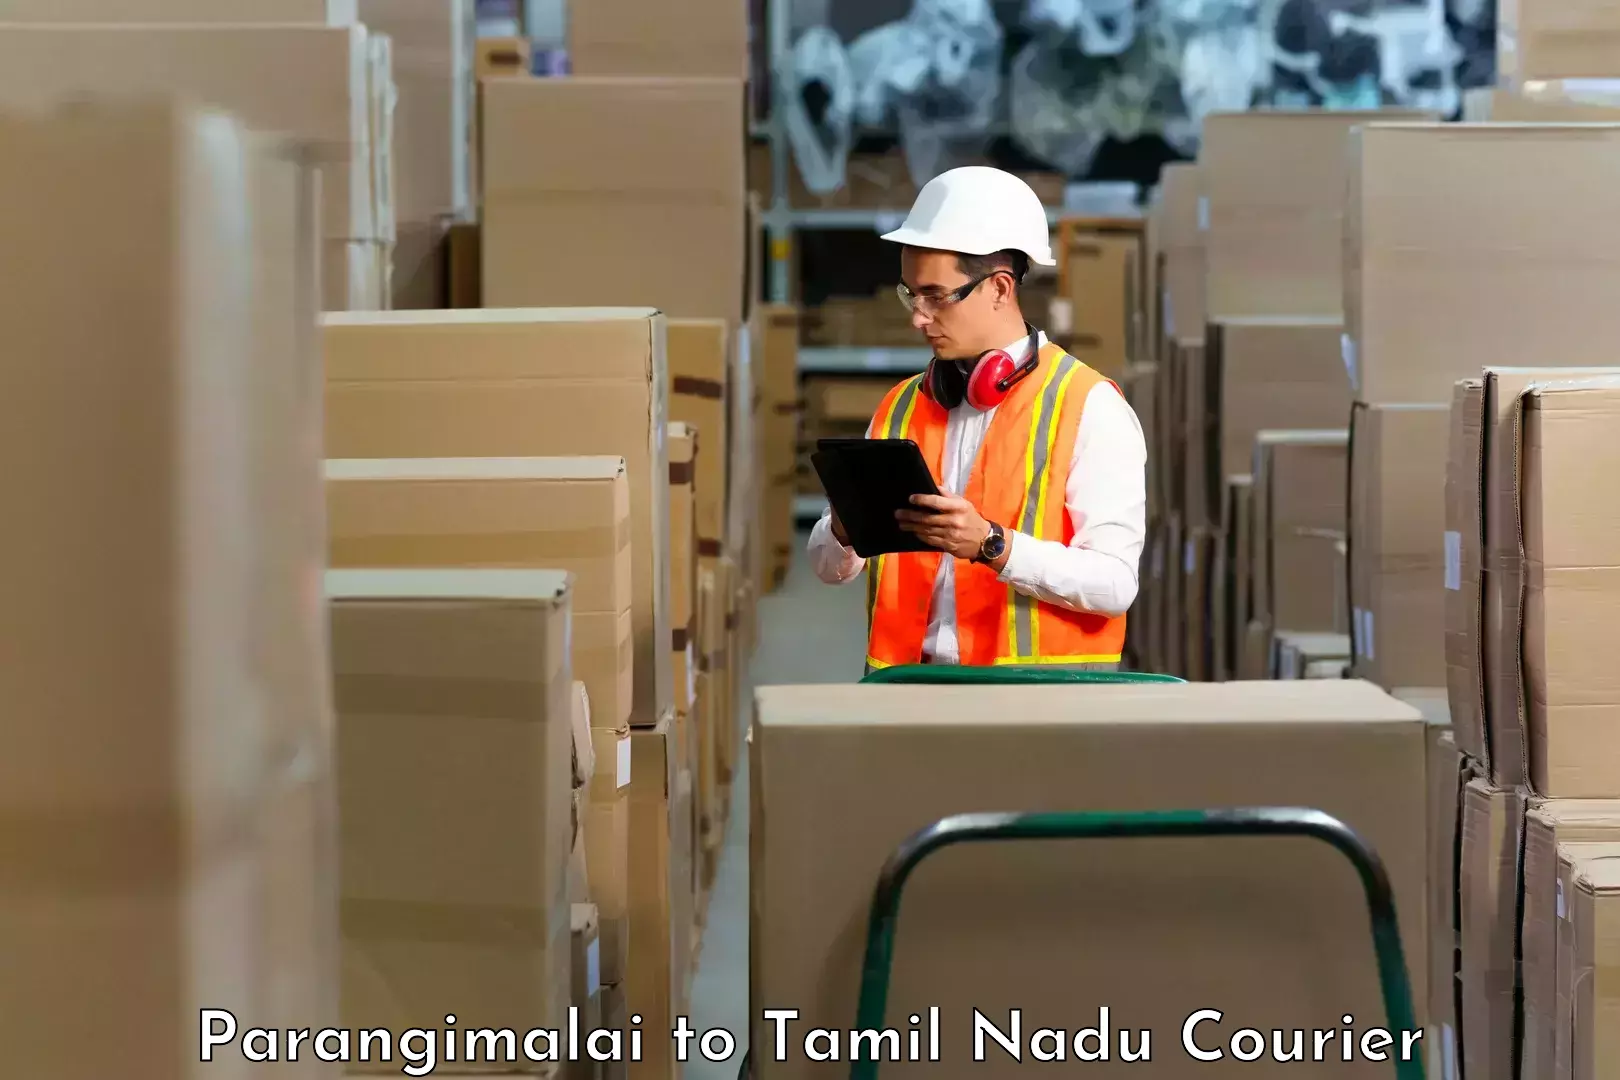 Express package handling in Parangimalai to Tamil Nadu